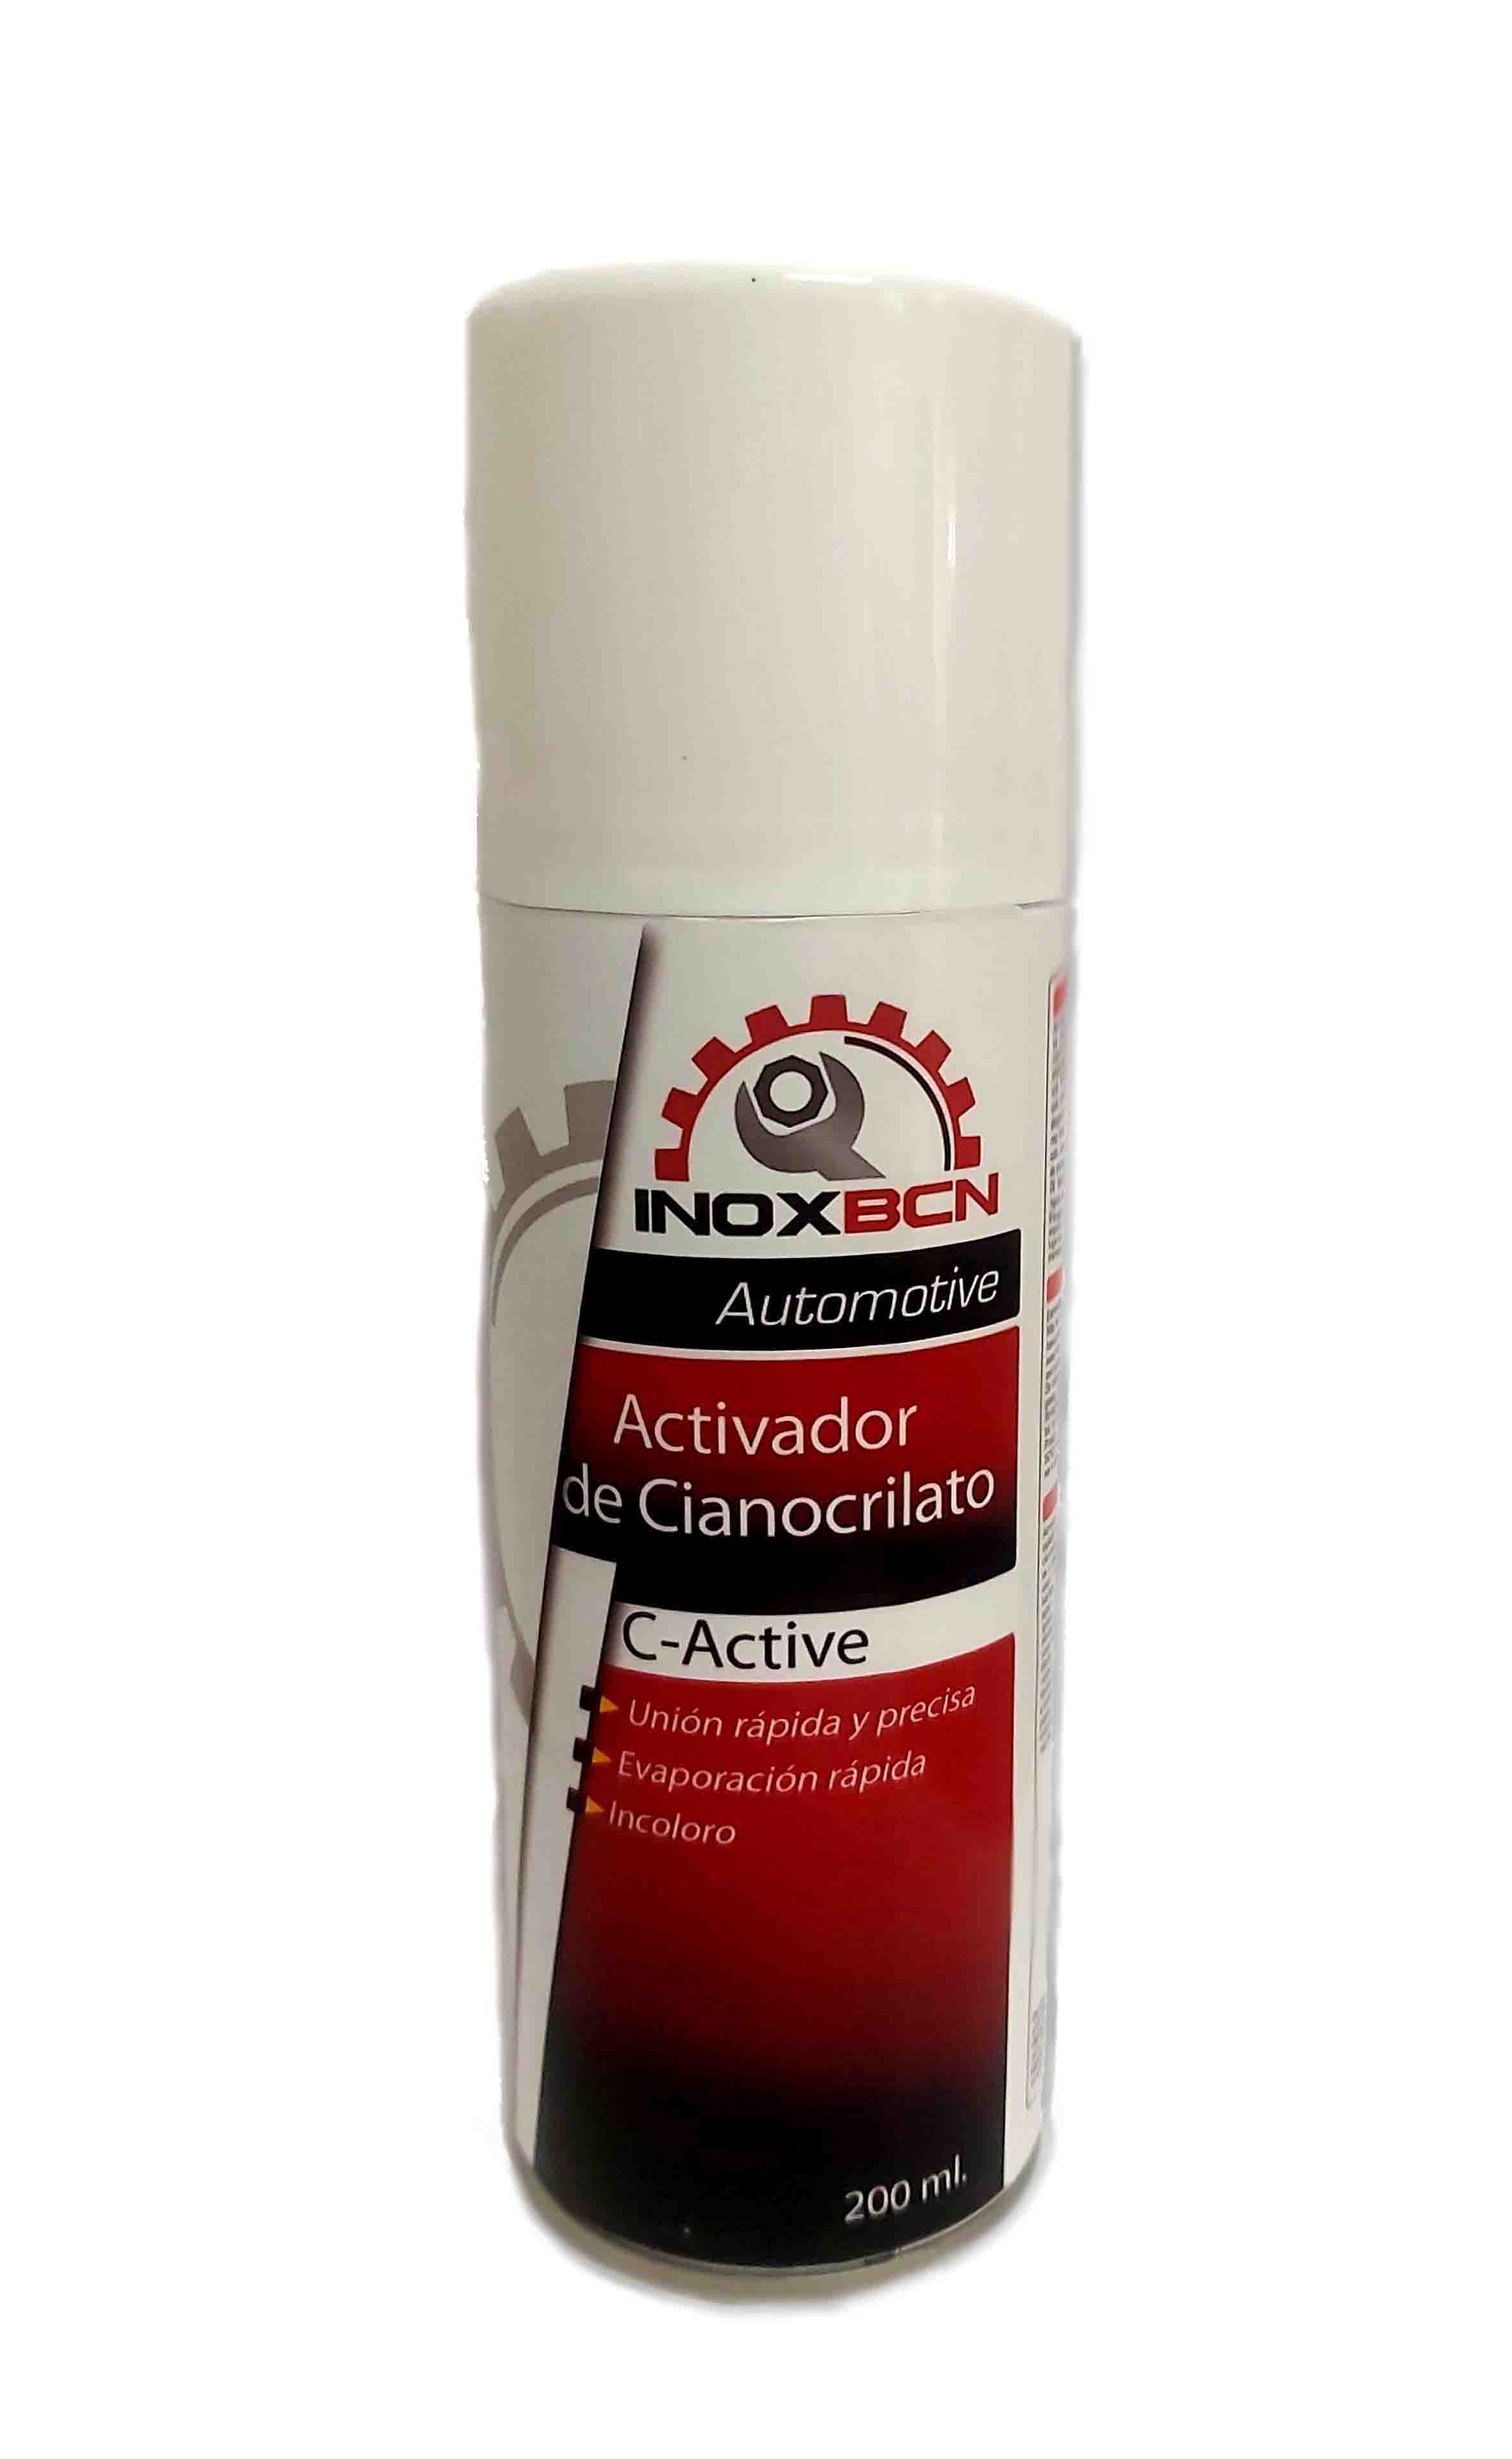 Inoxbcn Activador de cianocrilato en spray 200 ml - Inoxbcn